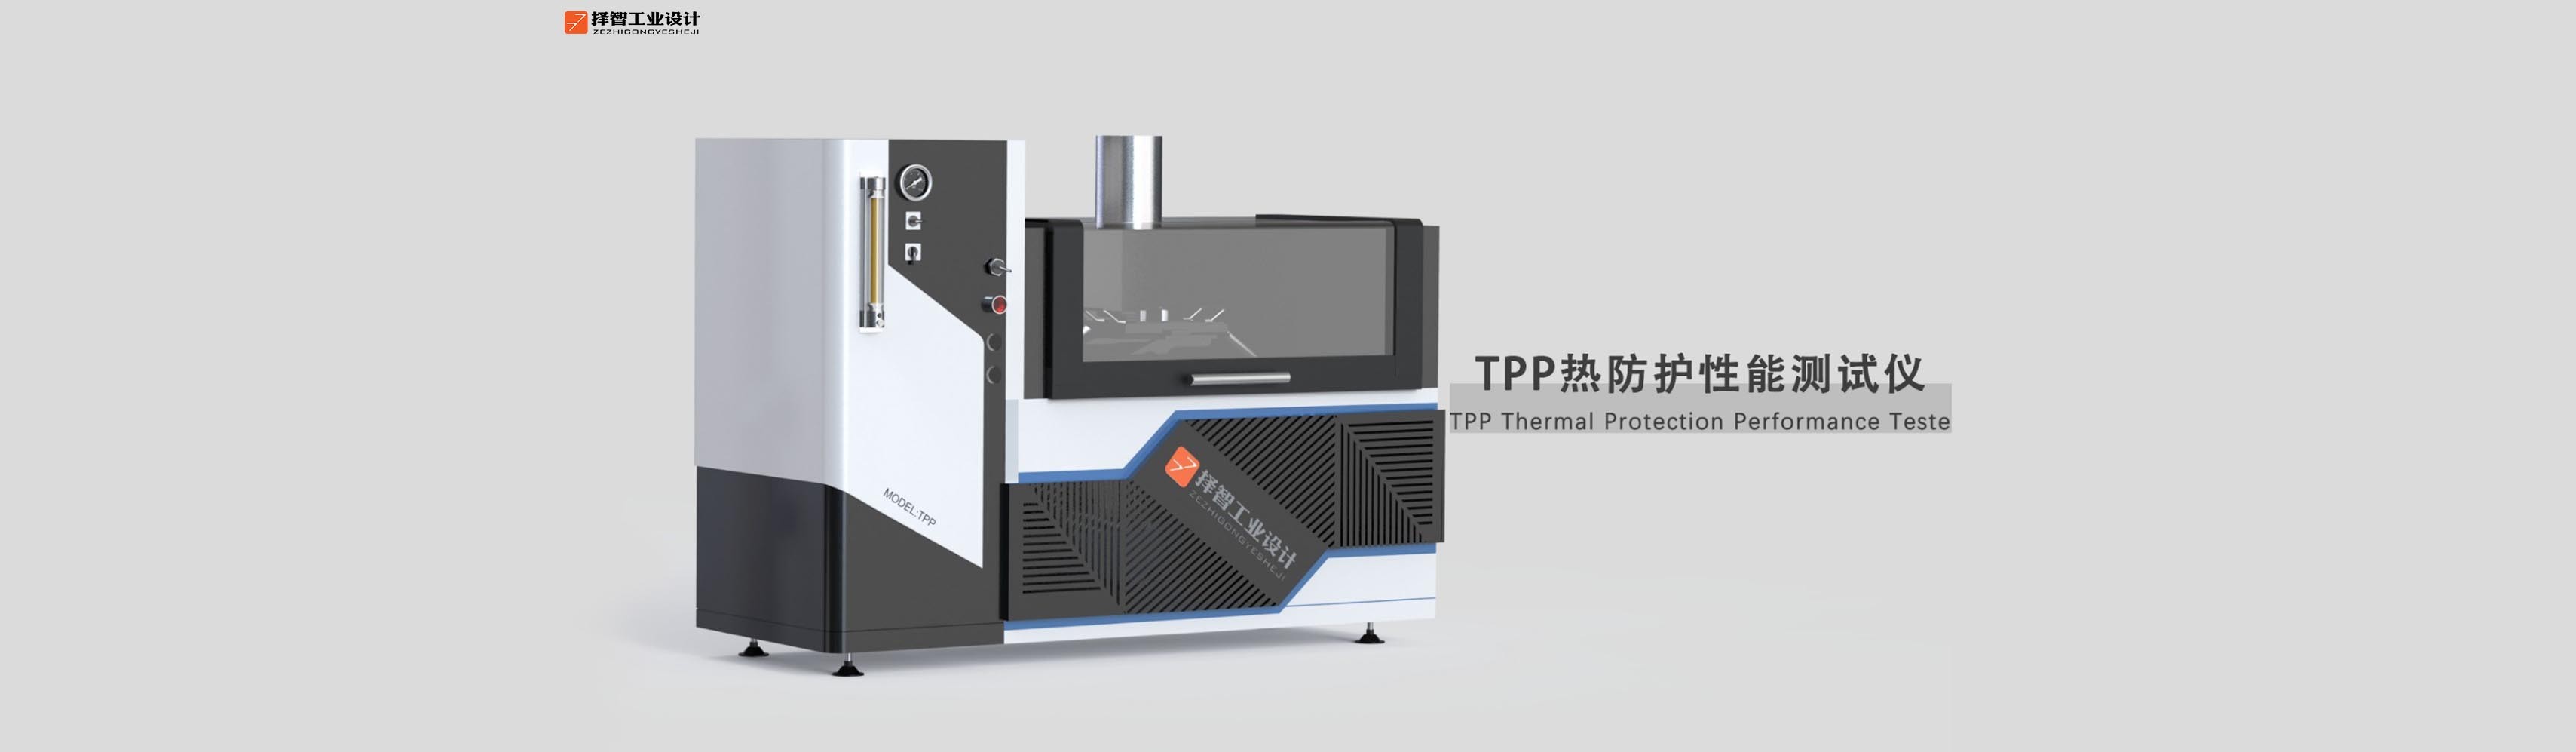 上海工业产品设计产品外观设计TPP热性能防护测试仪外观设计